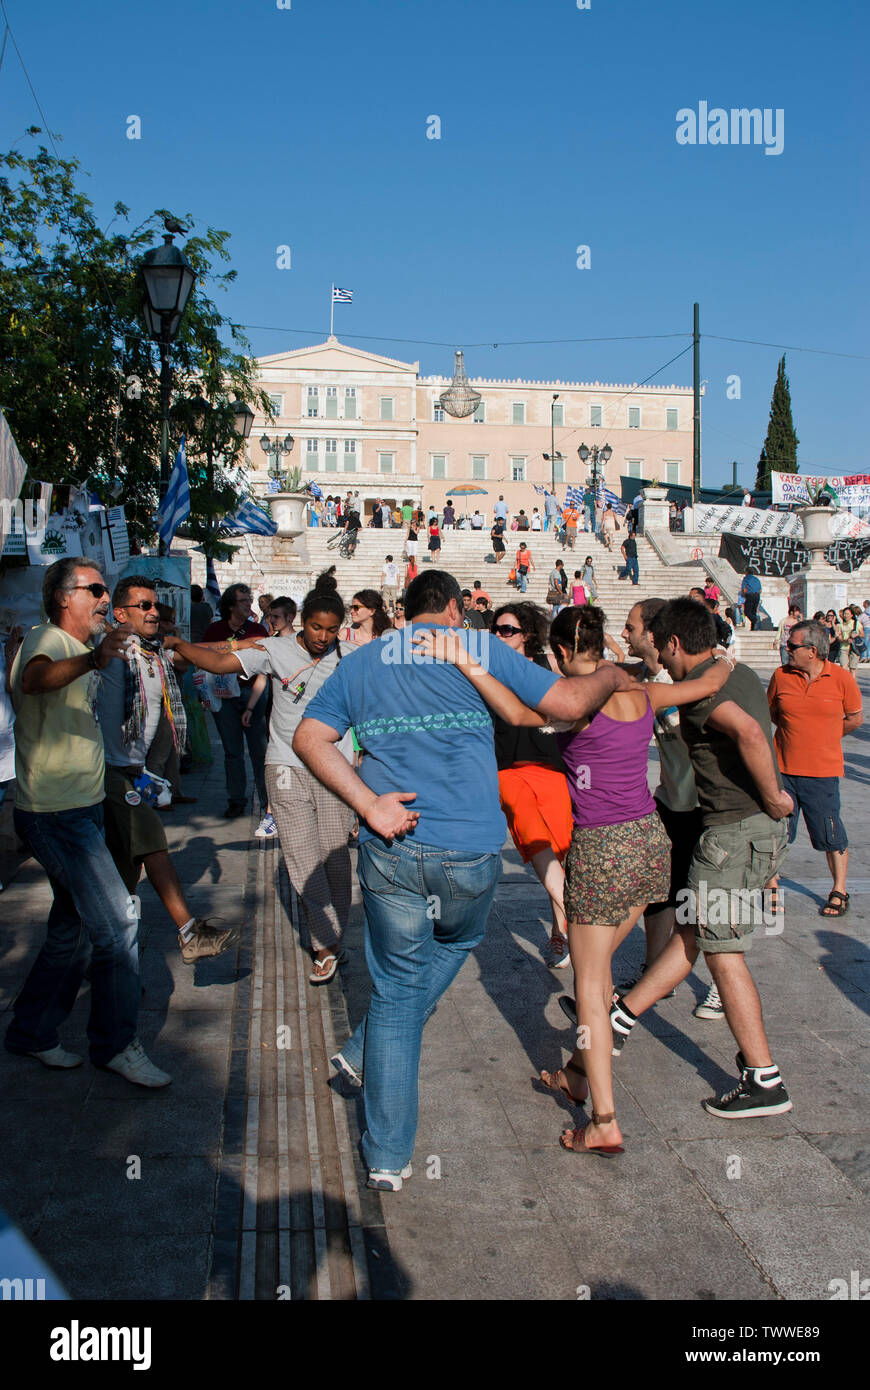 Manifestations contre les mesures d'austérité à l'extérieur du parlement grec à Athènes, Grèce. Juin 2011 Banque D'Images